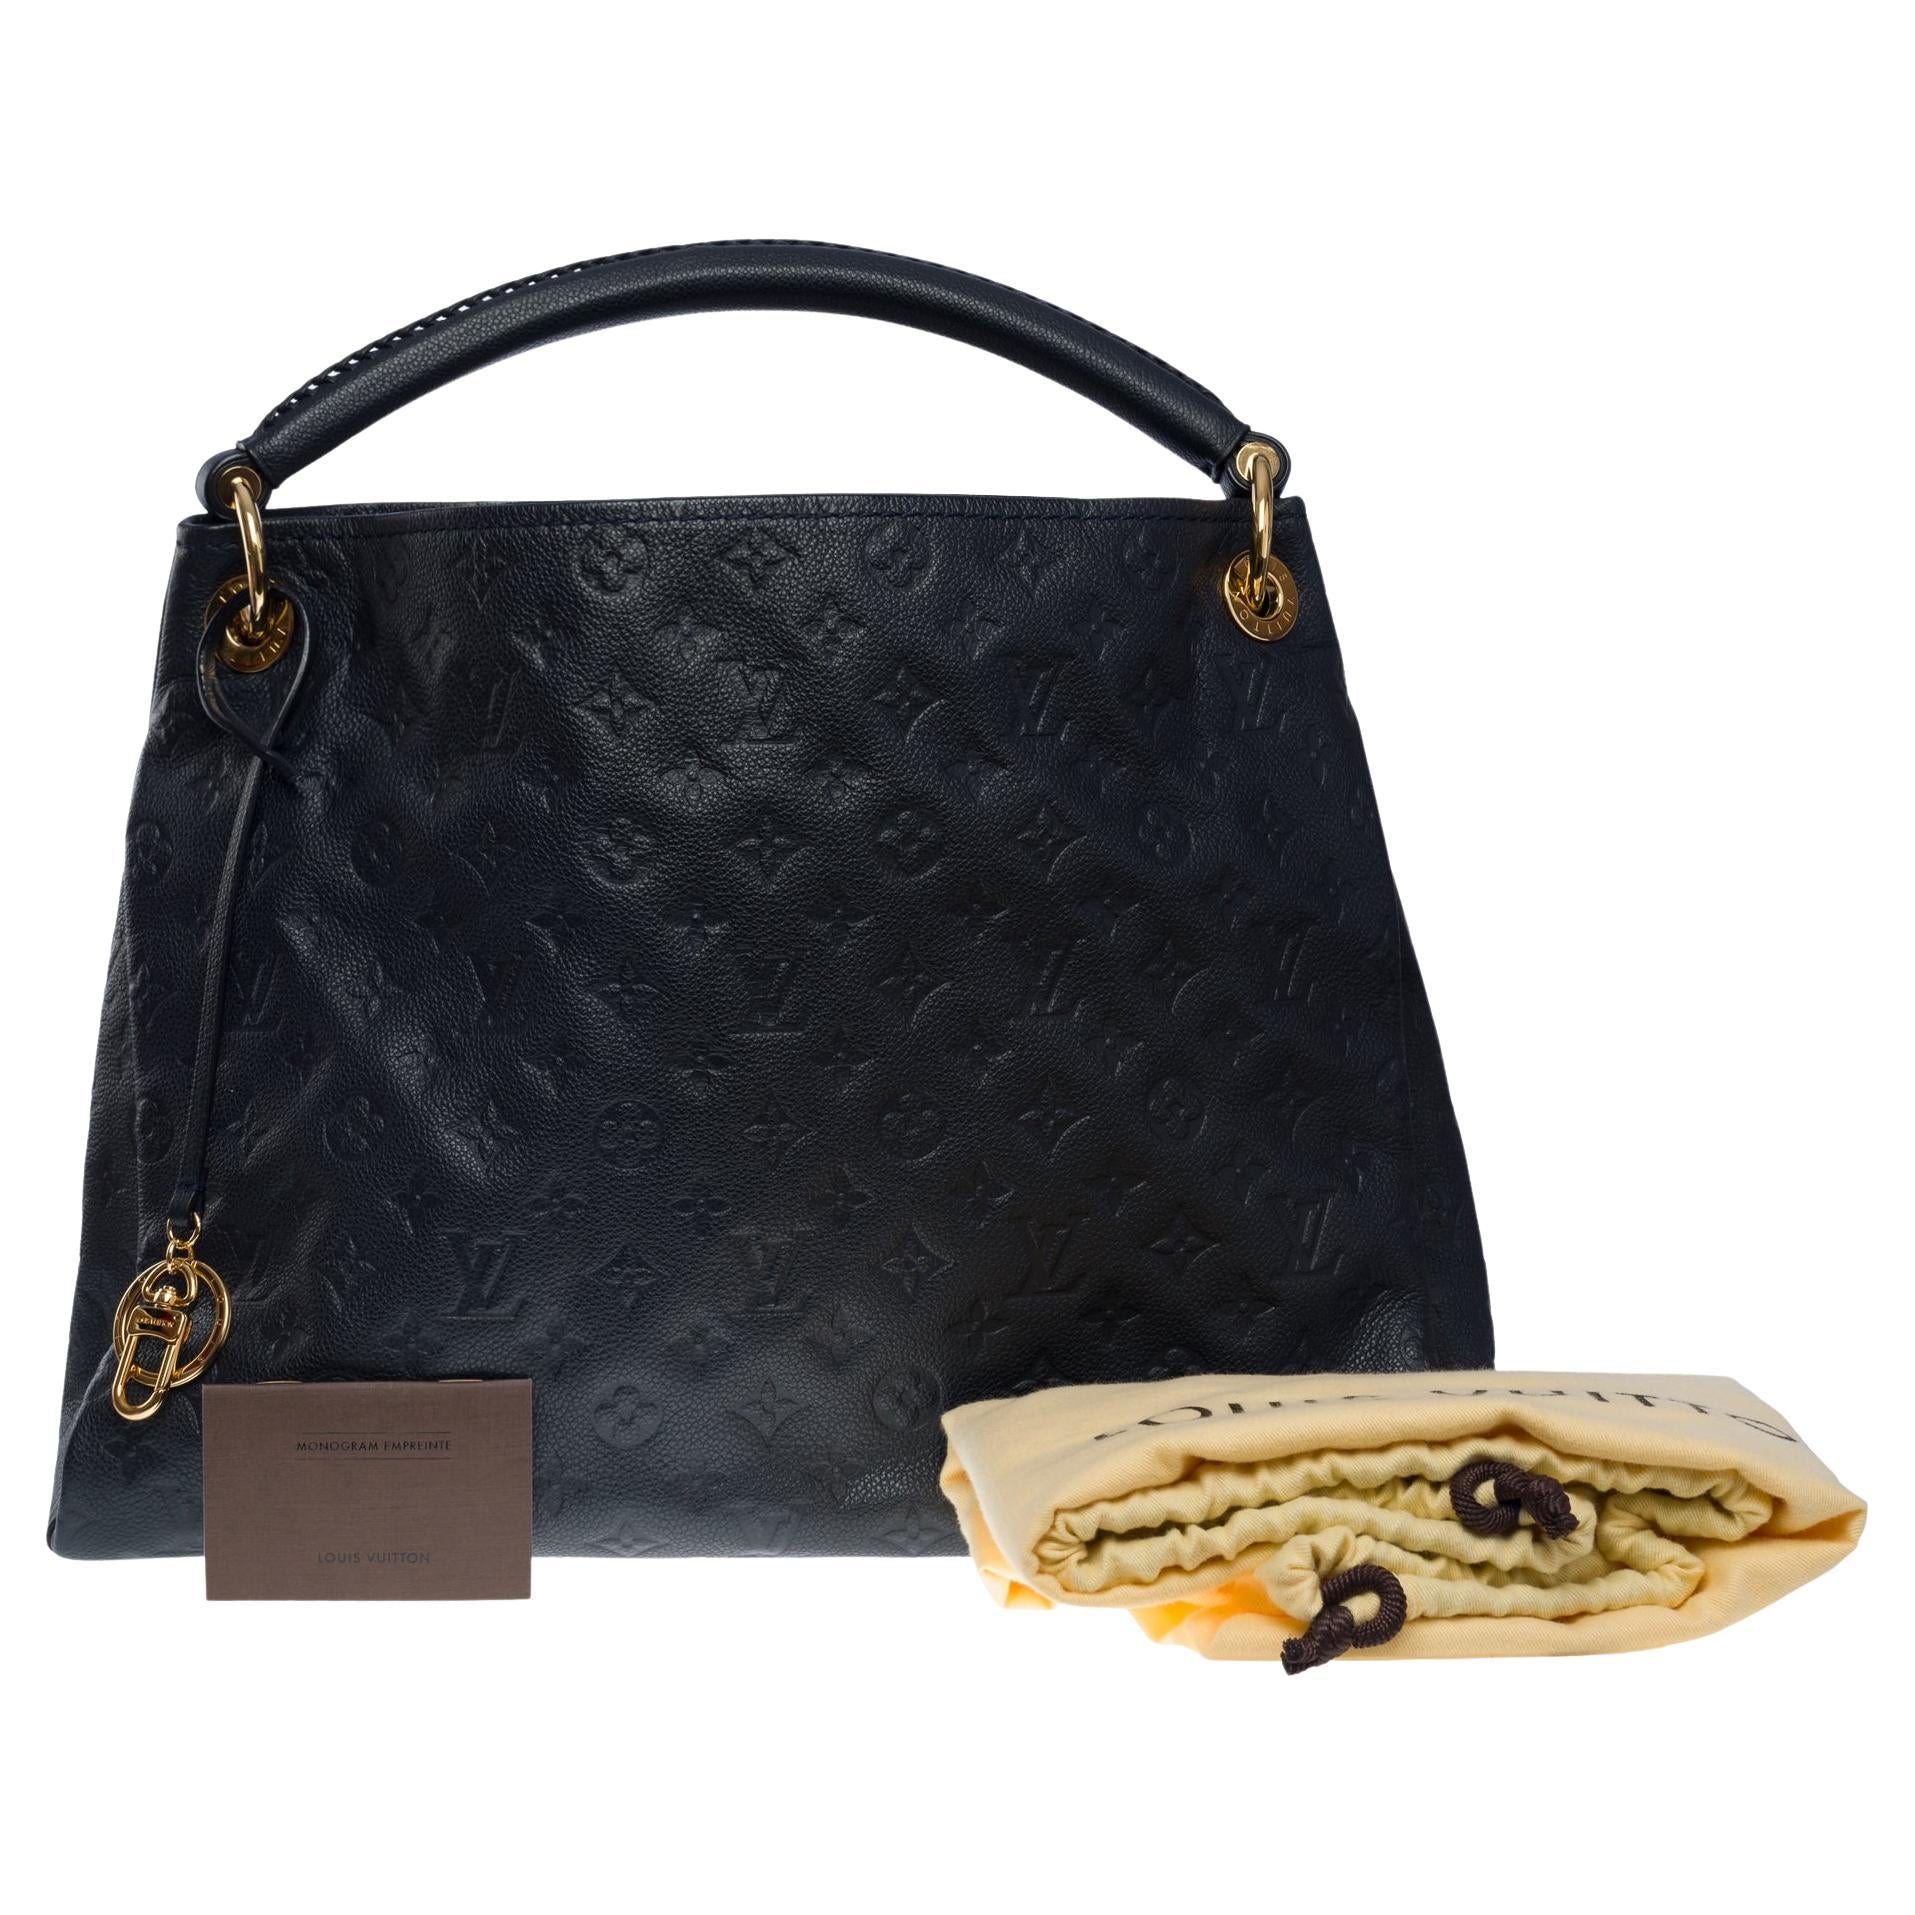 Louis Vuitton Monogram Canvas Artsy MM Handbag